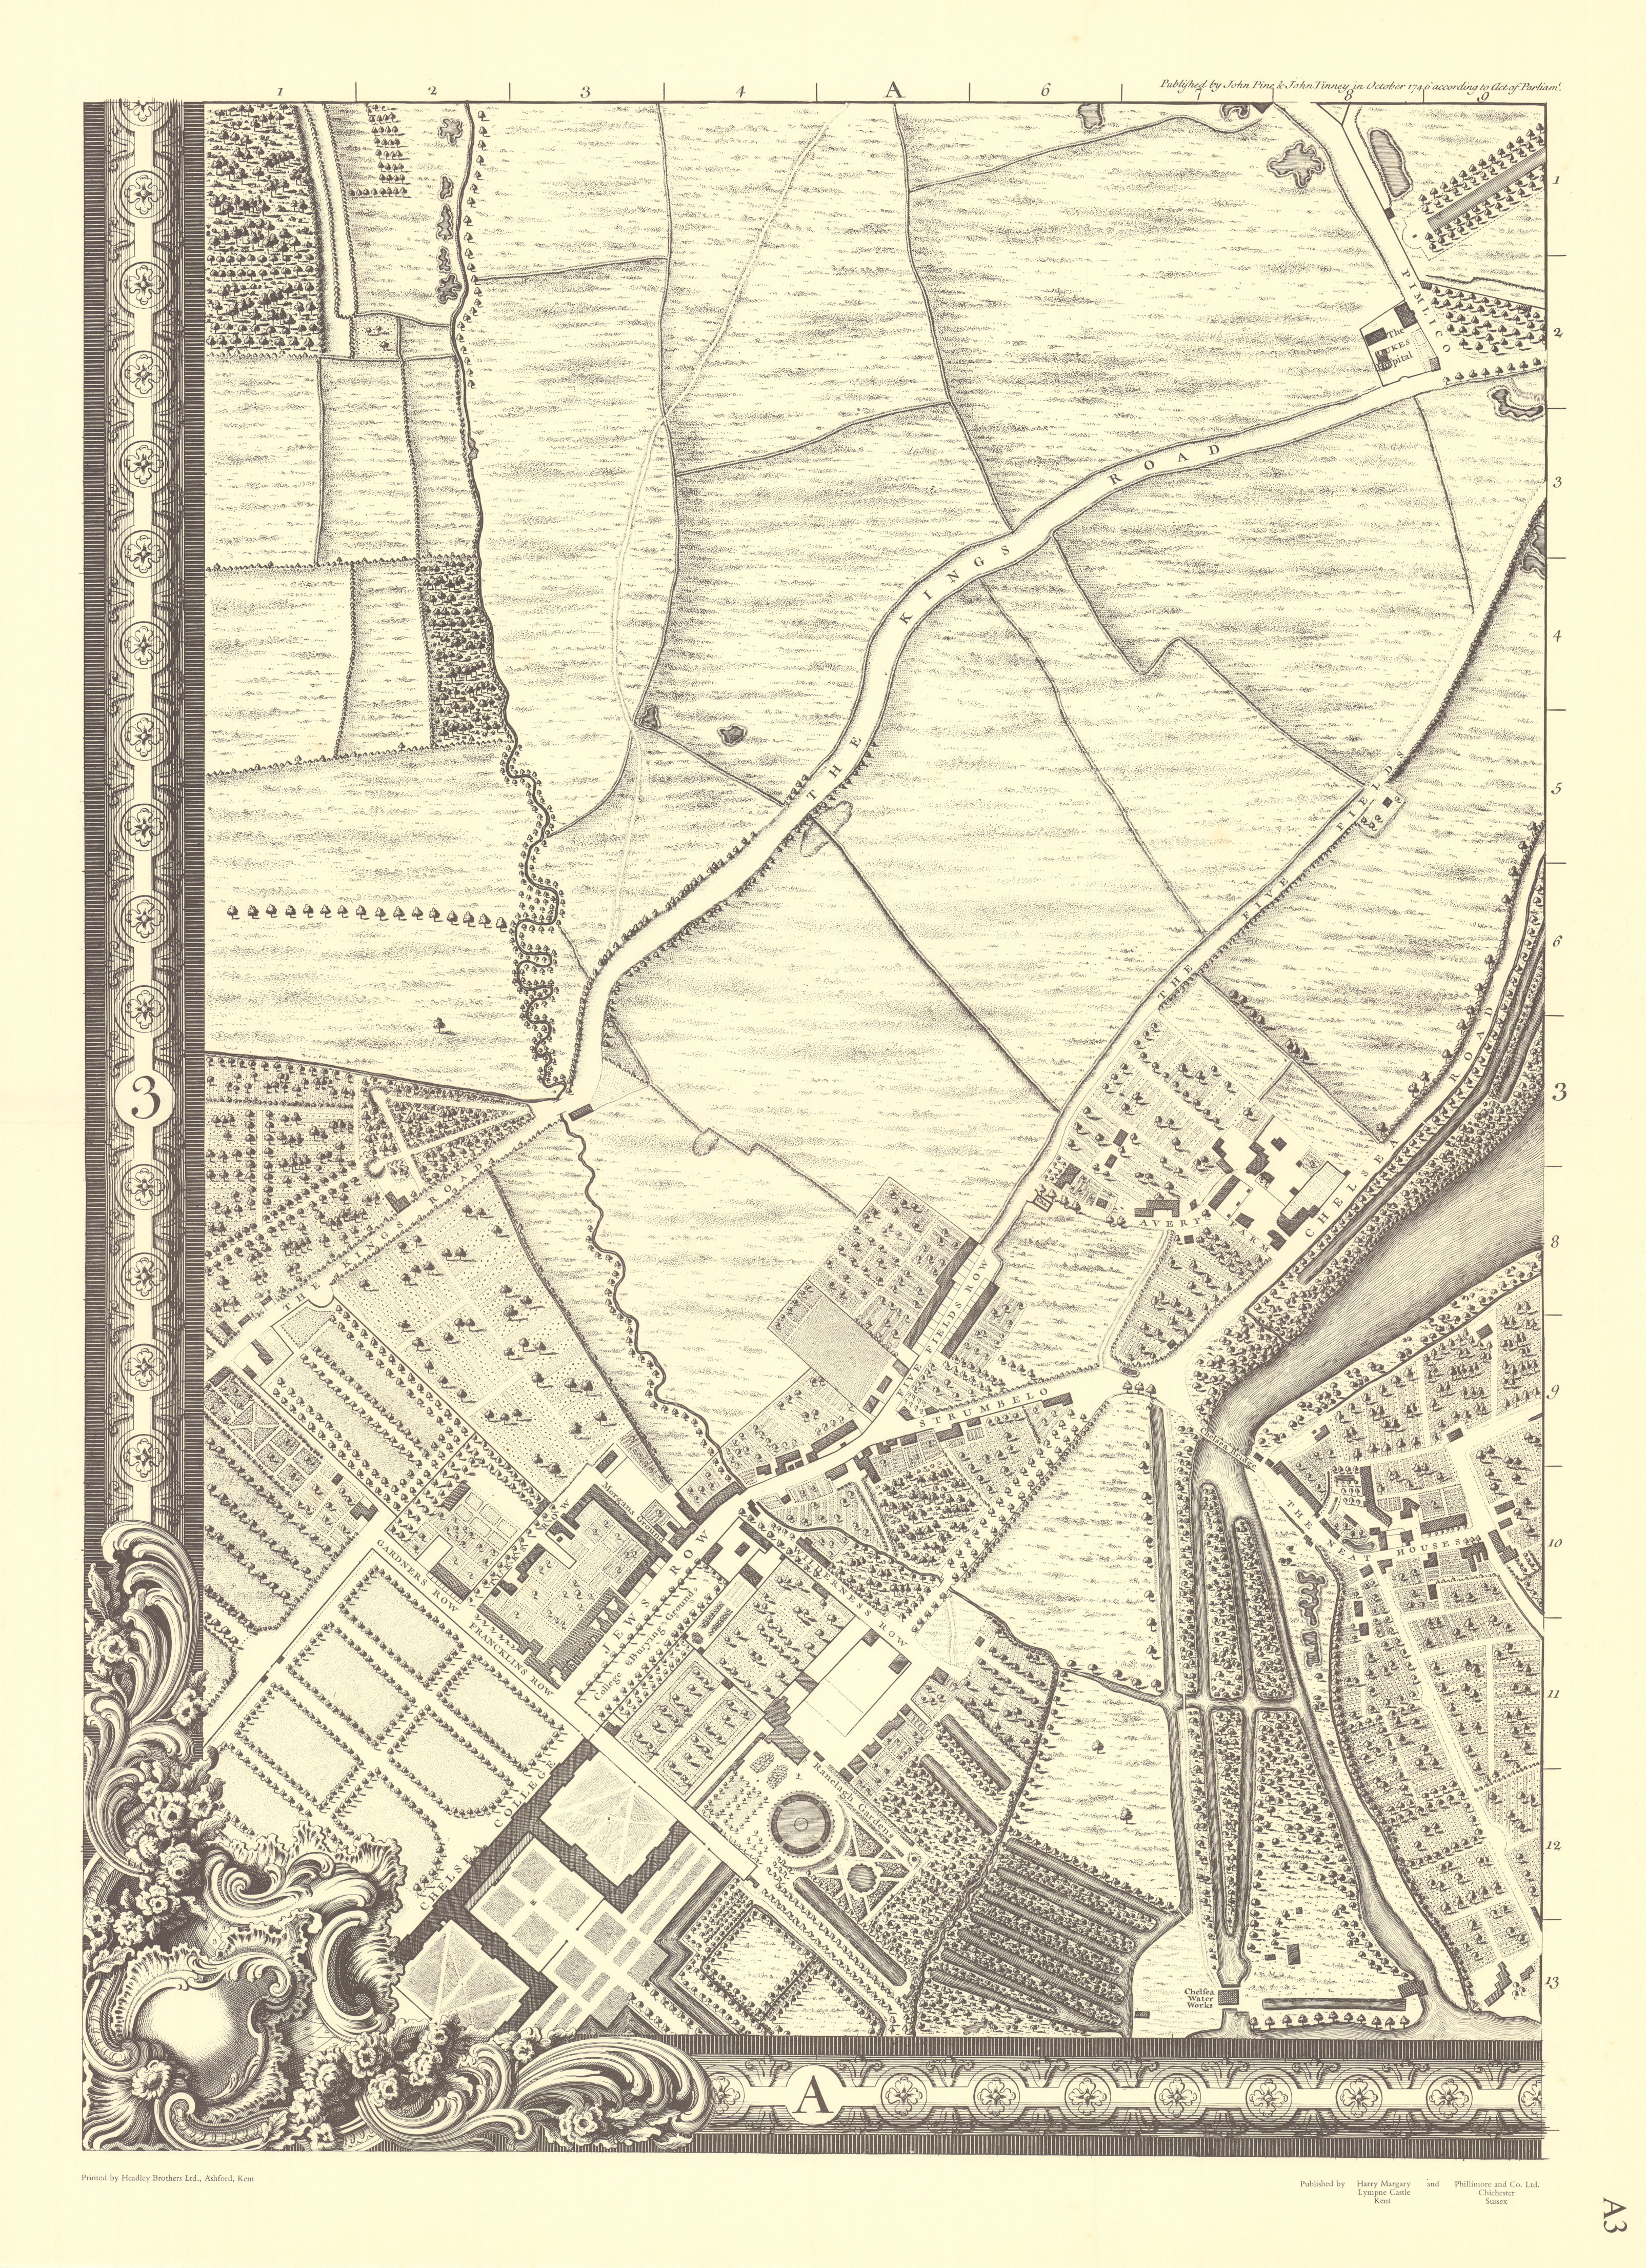 Chelsea, Belgravia, Knightsbridge, Pimlico. A3. After ROCQUE 1971 (1746) map